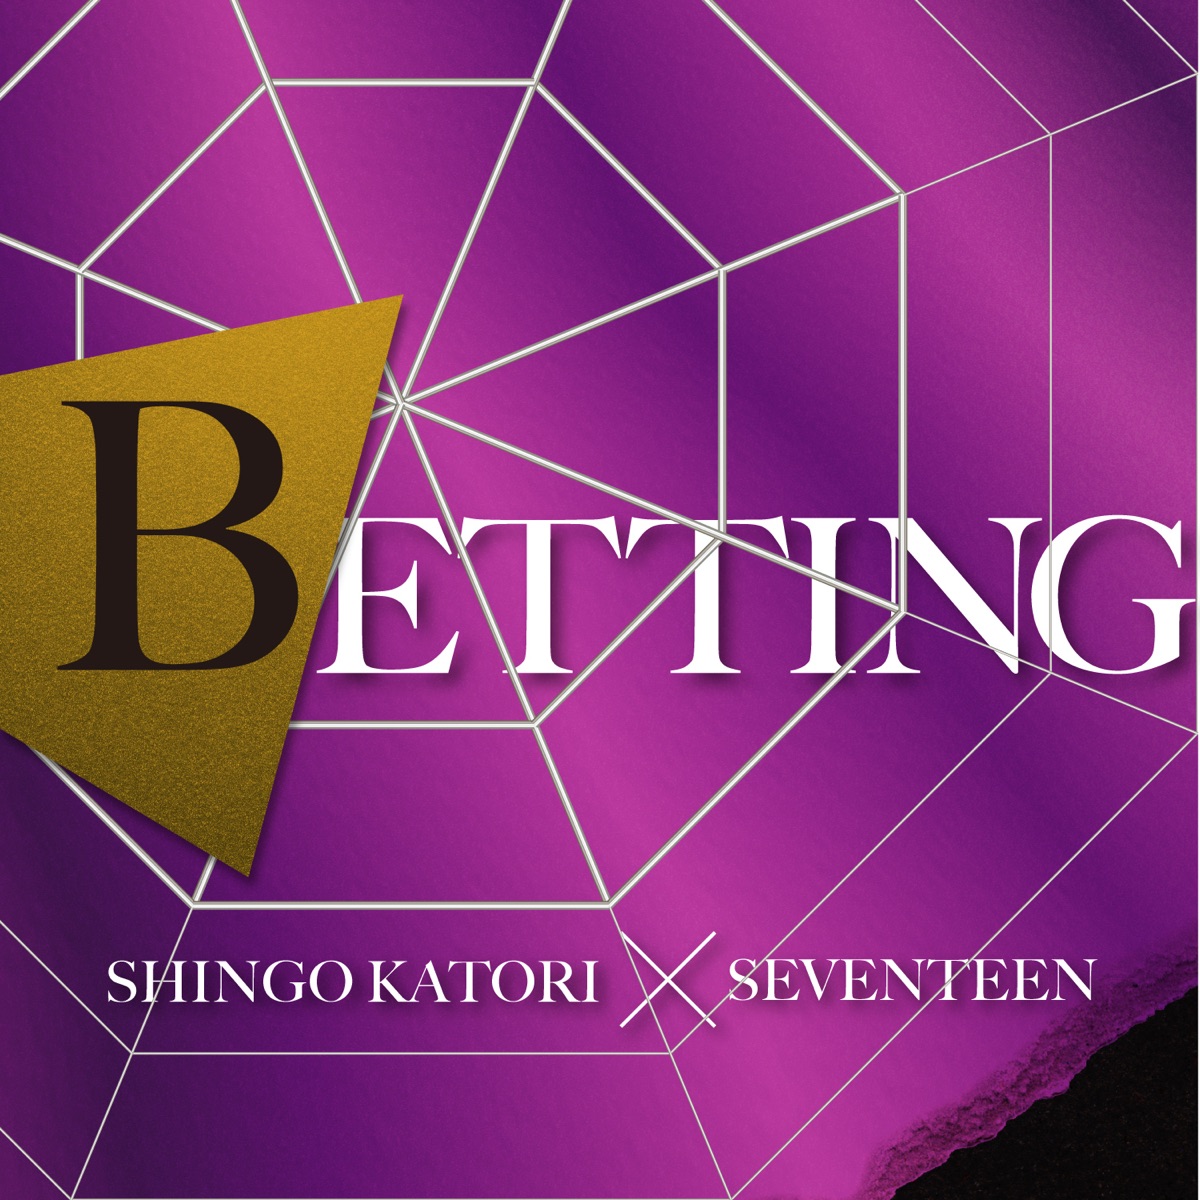 『香取慎吾×SEVENTEEN - BETTING』収録の『BETTING』ジャケット